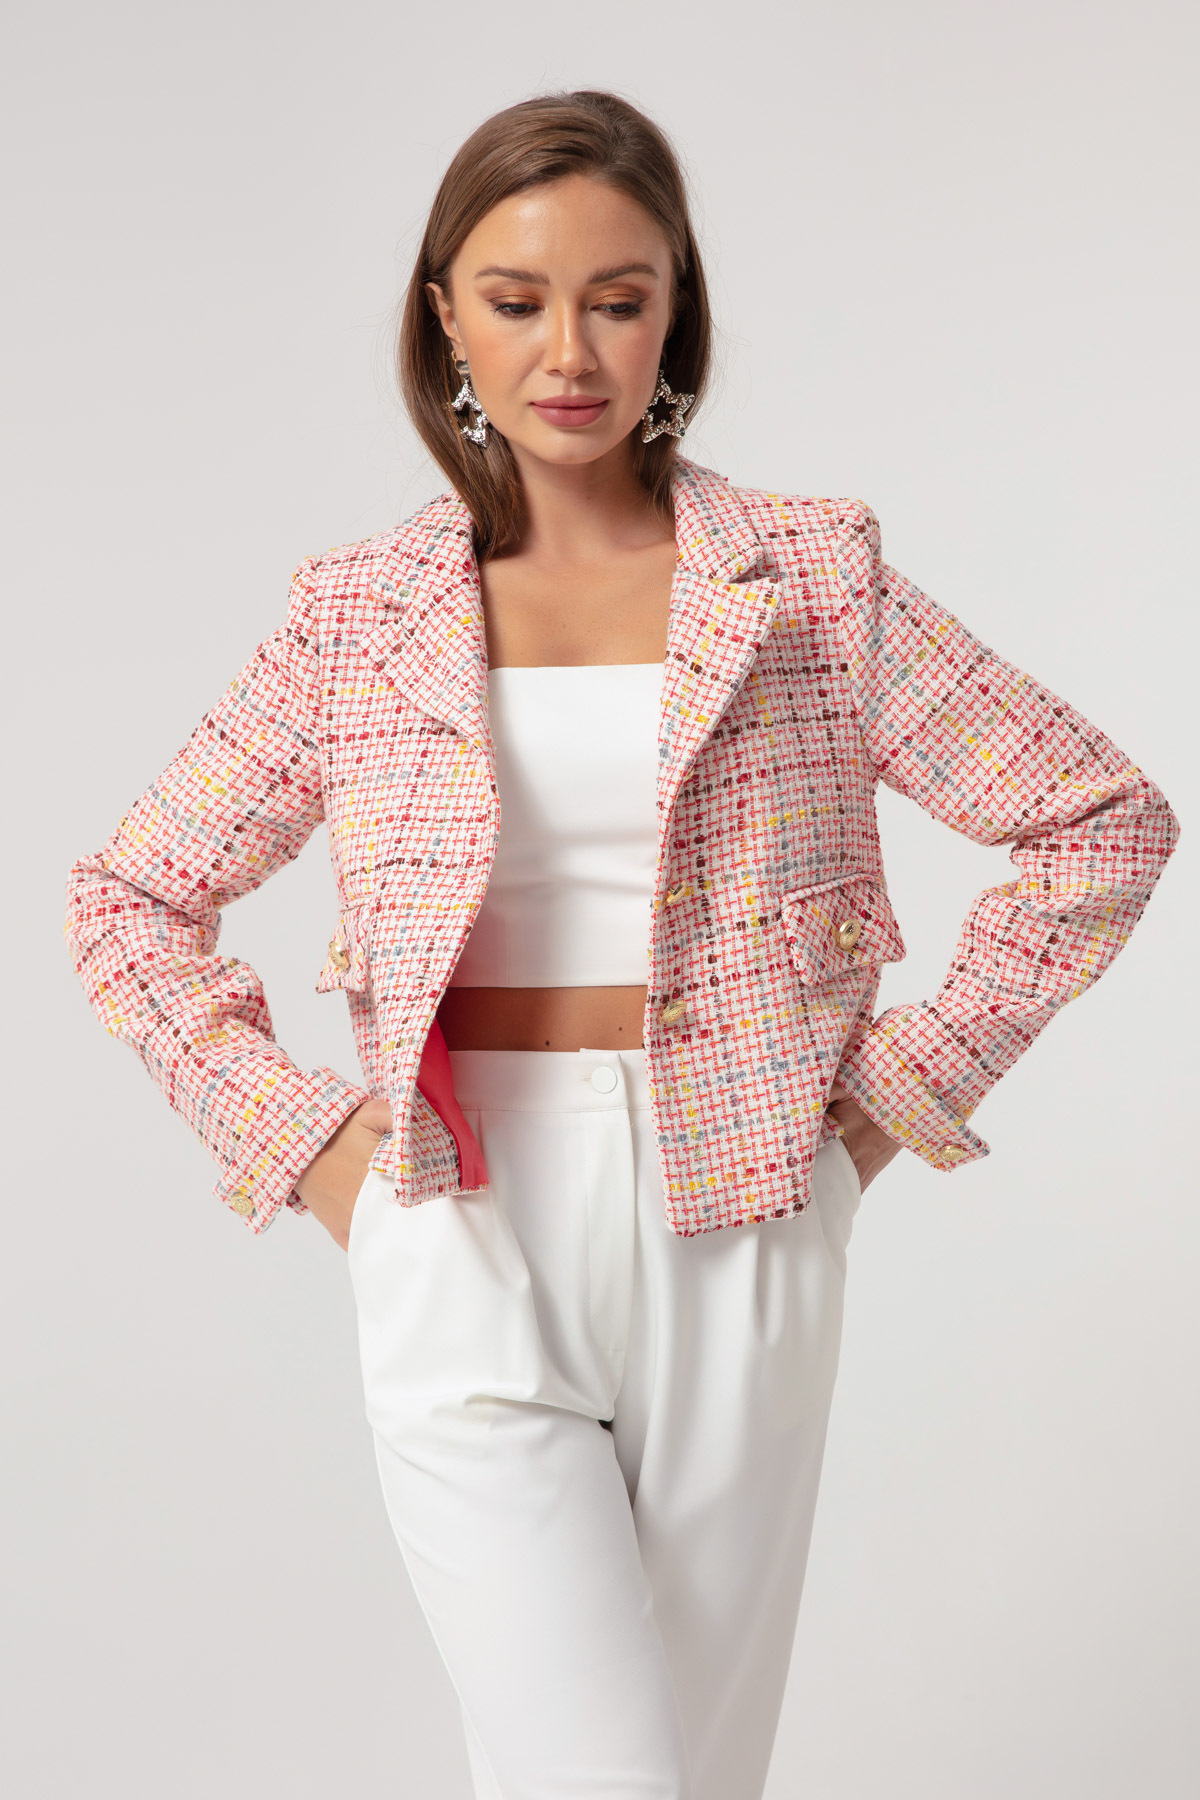 Женская короткая куртка пудрового цвета Lafaba, розовый